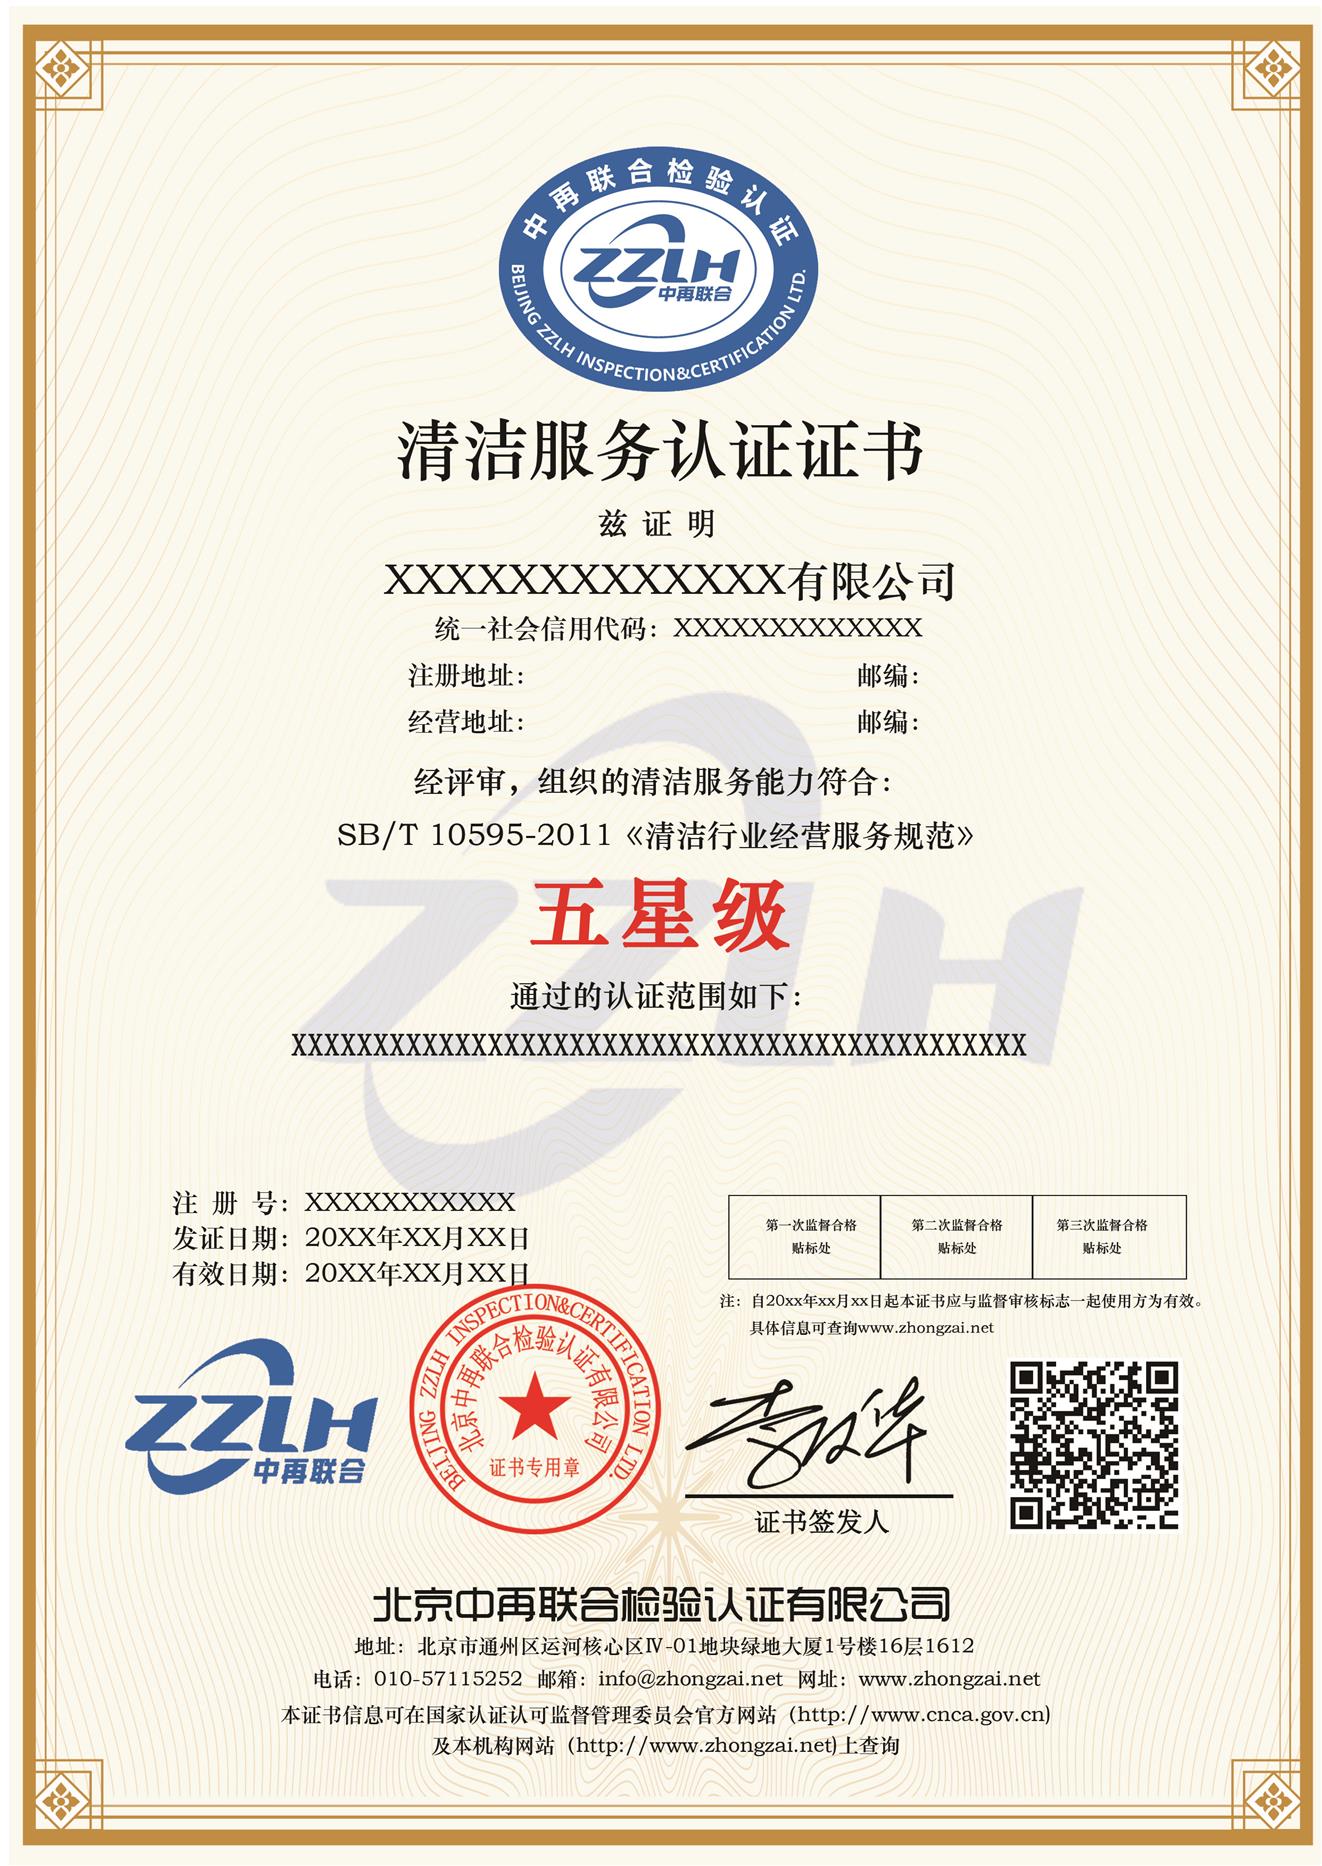 补贴申报 物业星级服务认证 泰州物业服务认证机构